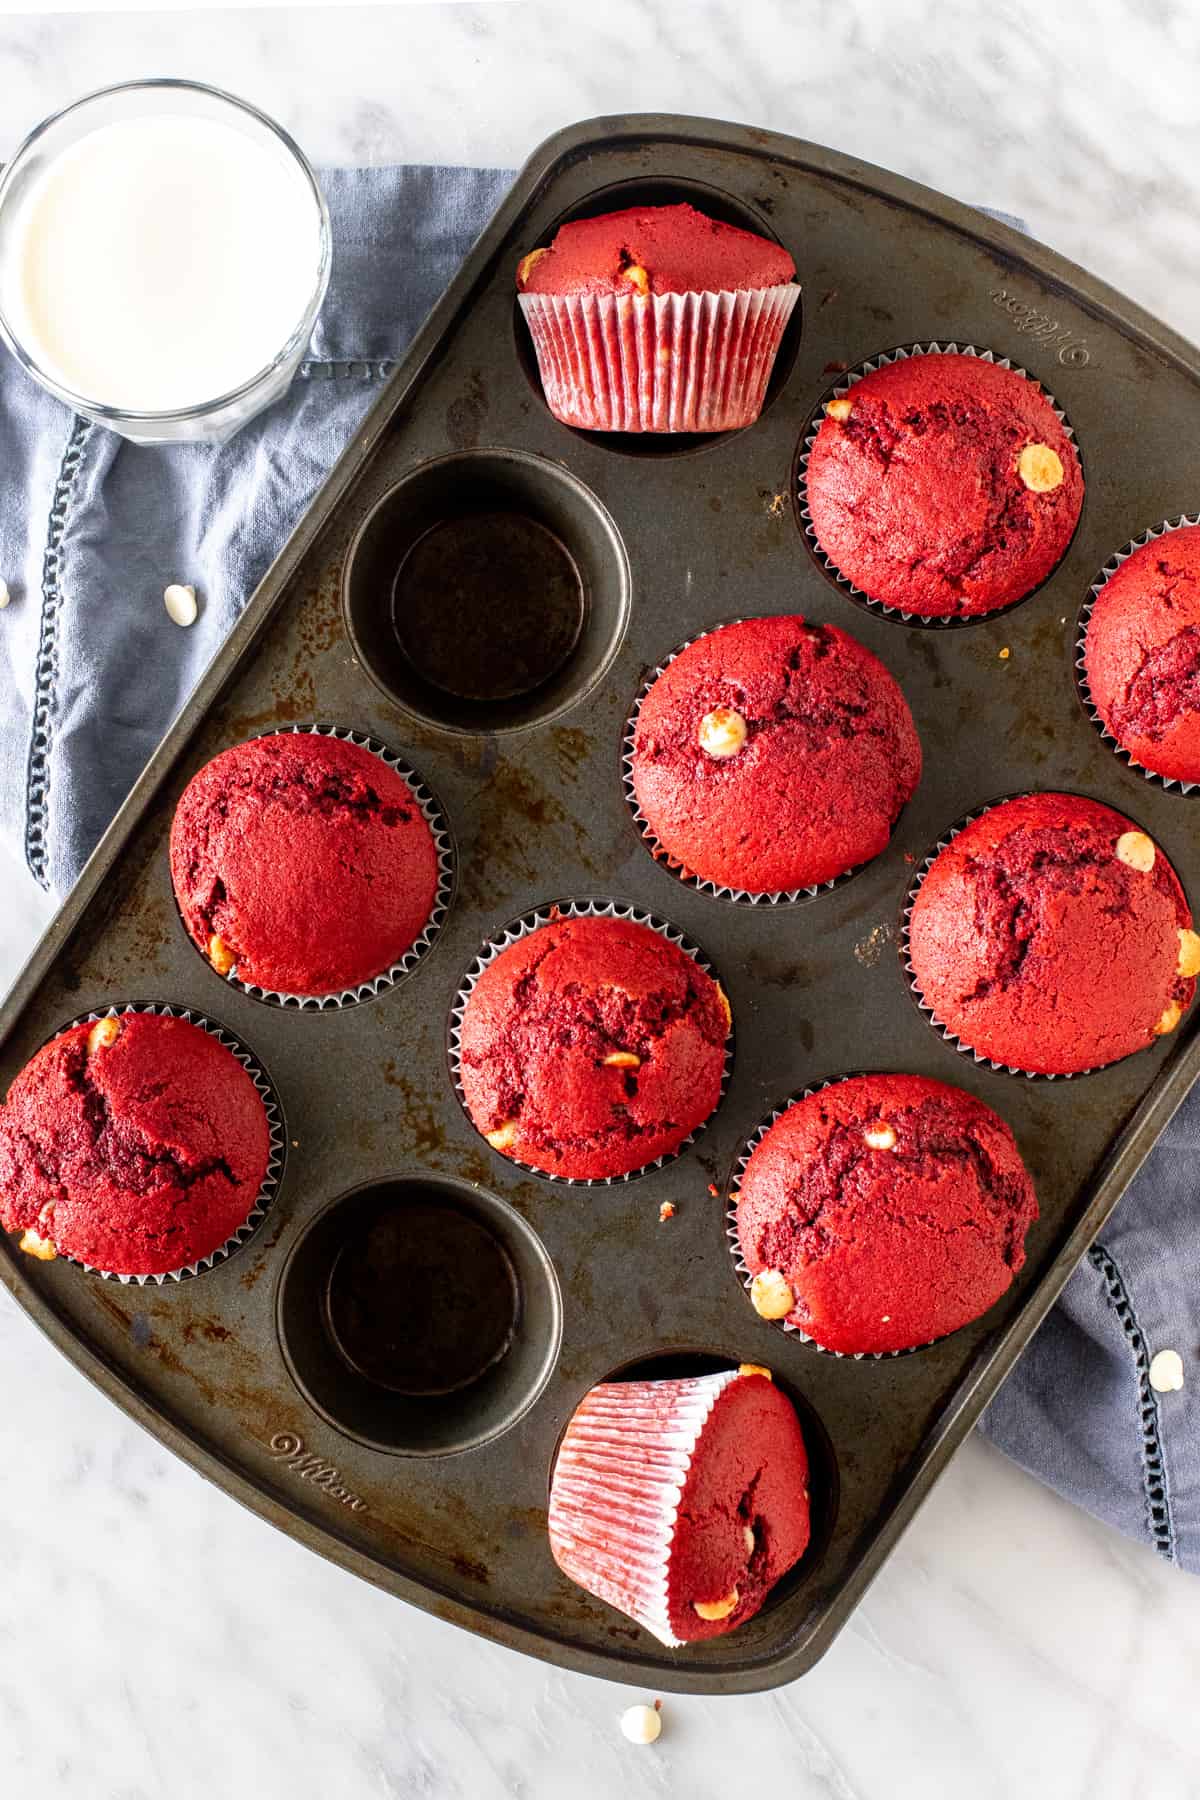 Pan of red velvet muffins